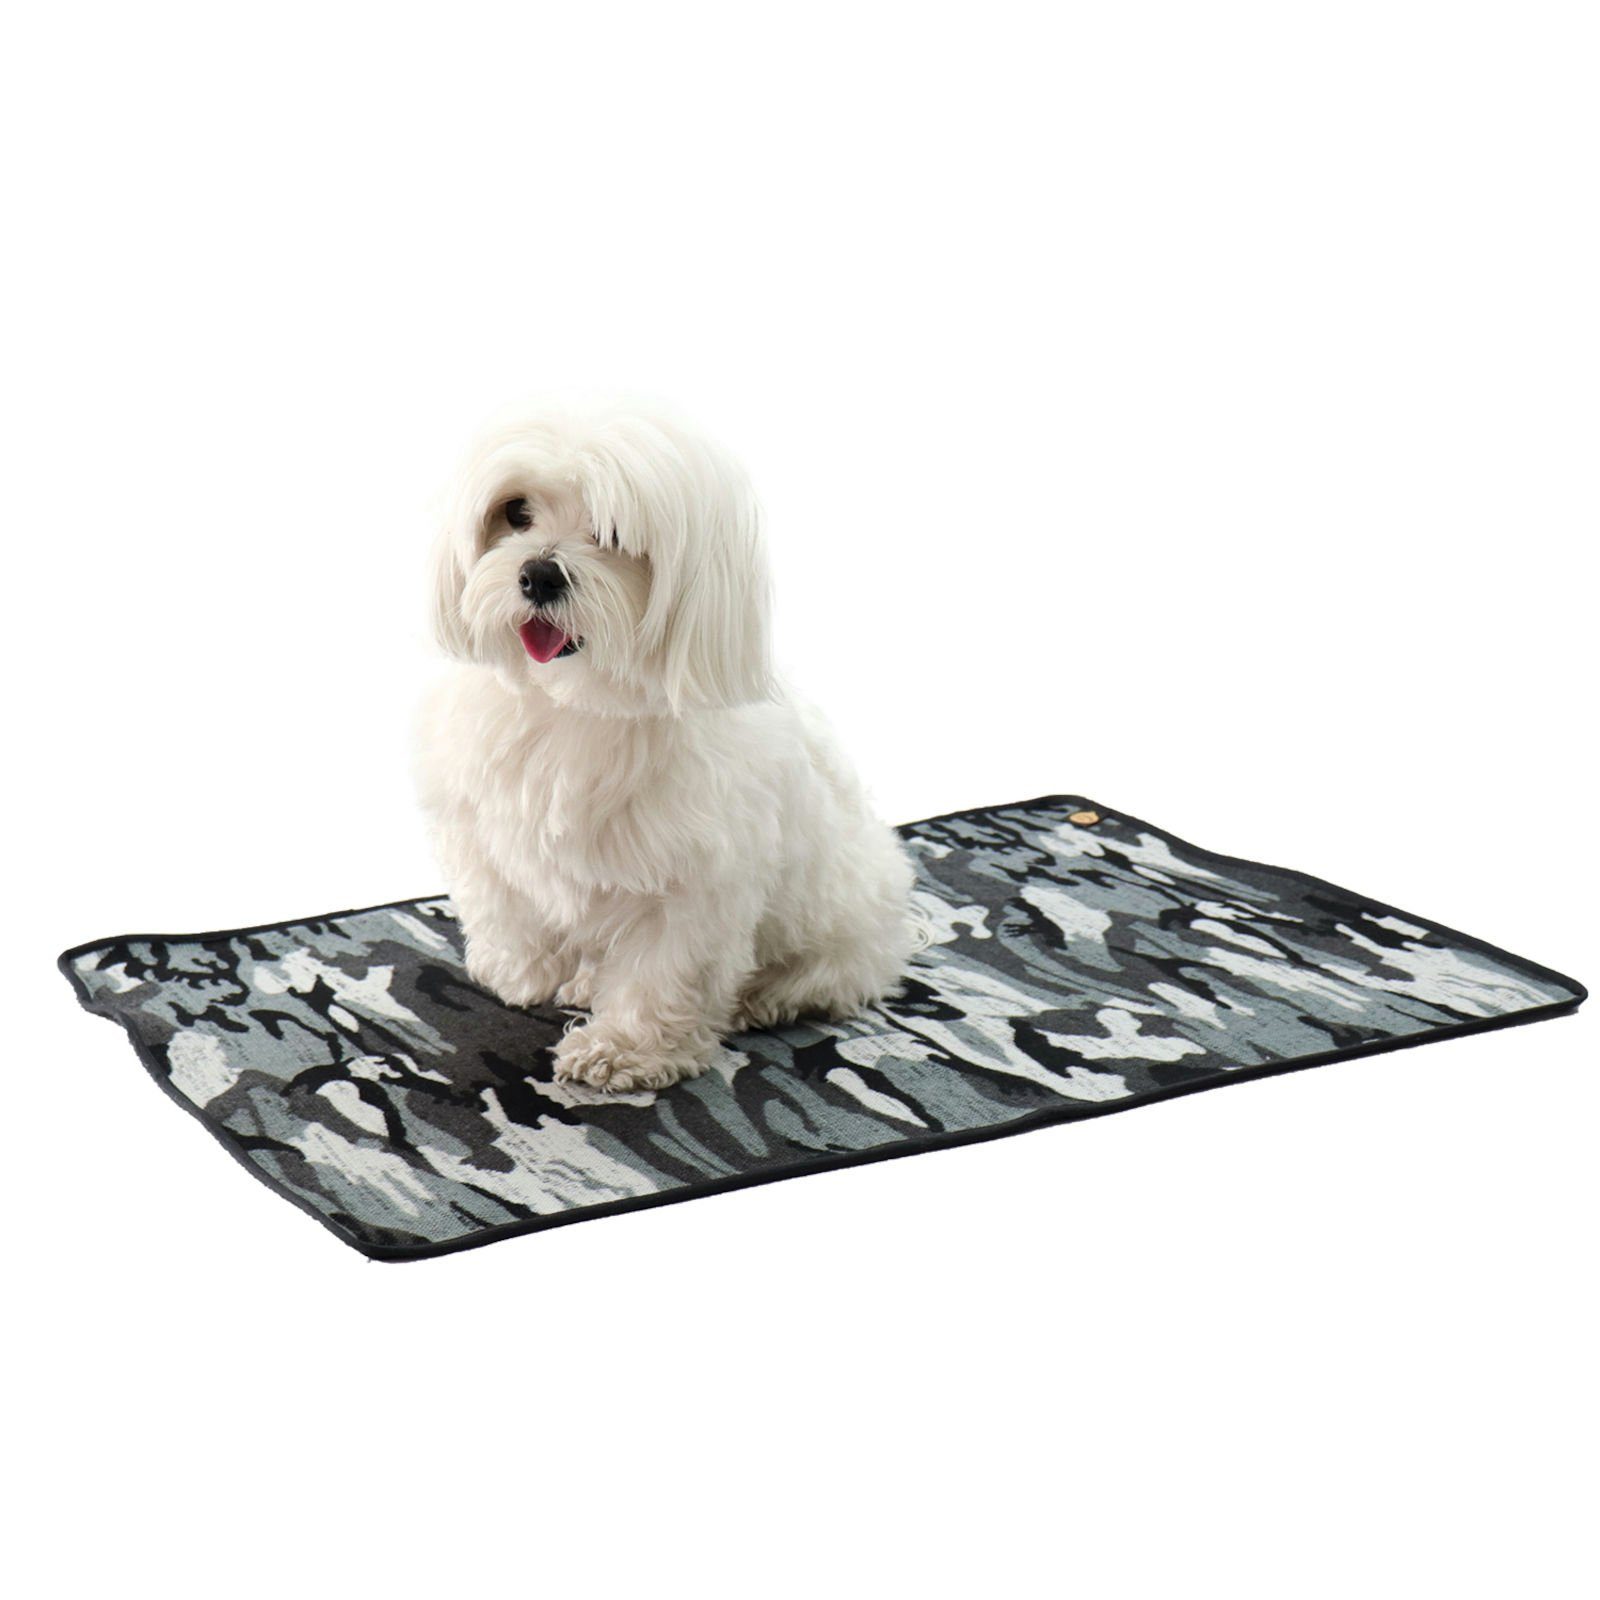 Fashion Dog Hundematte Fashion Dog Warme Hunde- und Katzendecke - Camouflage - 70 x 100 cm, in verschiedenen Größen erhältlich